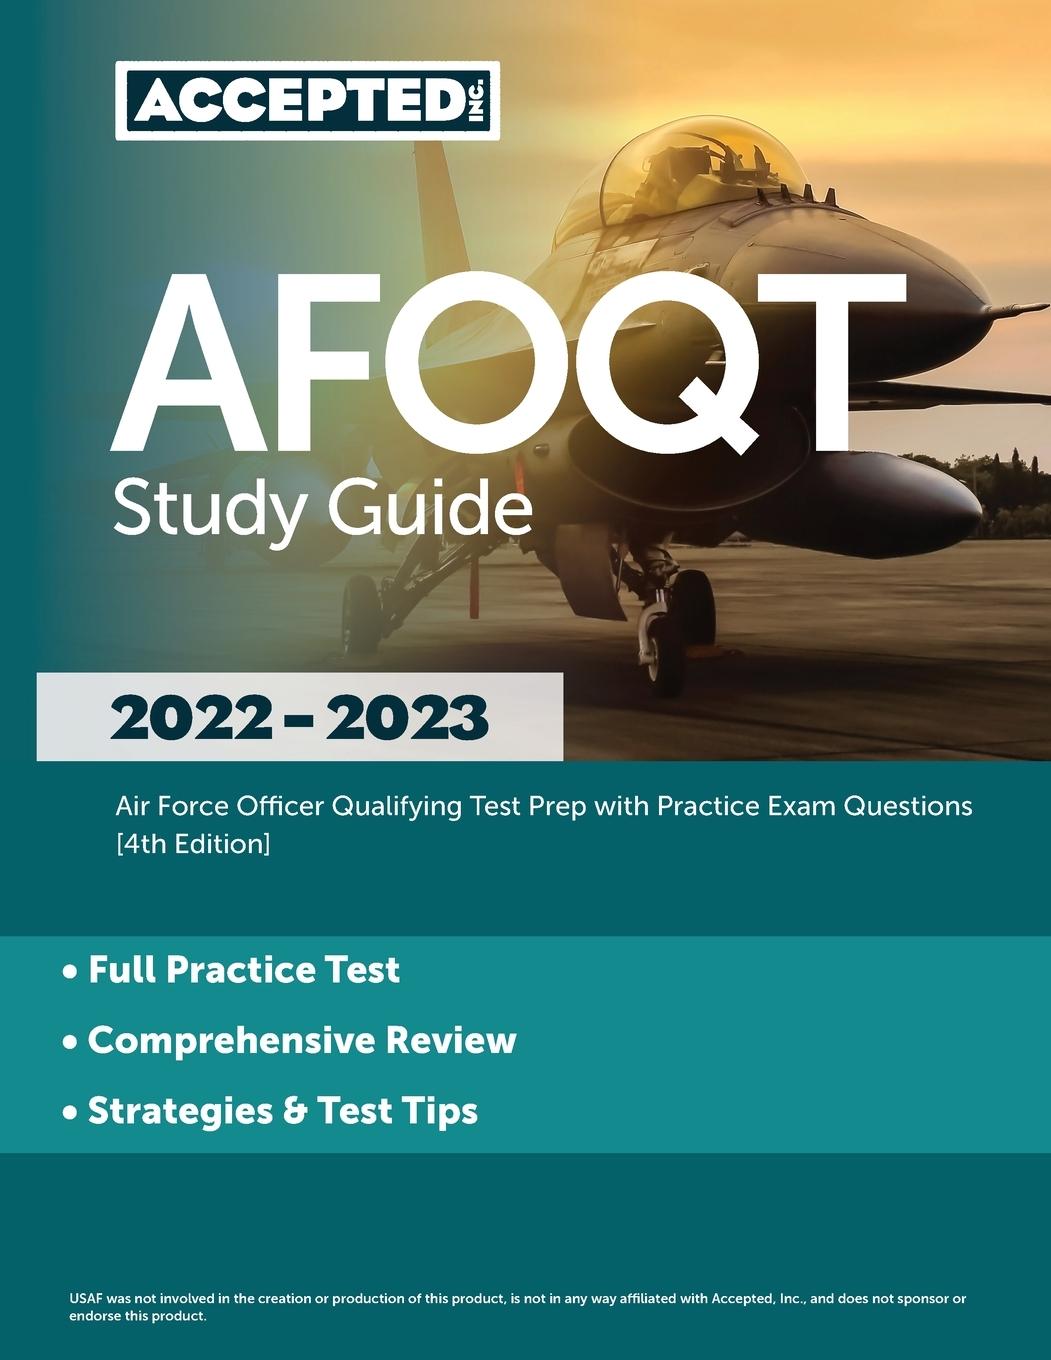 Kniha AFOQT Study Guide 2022-2023 